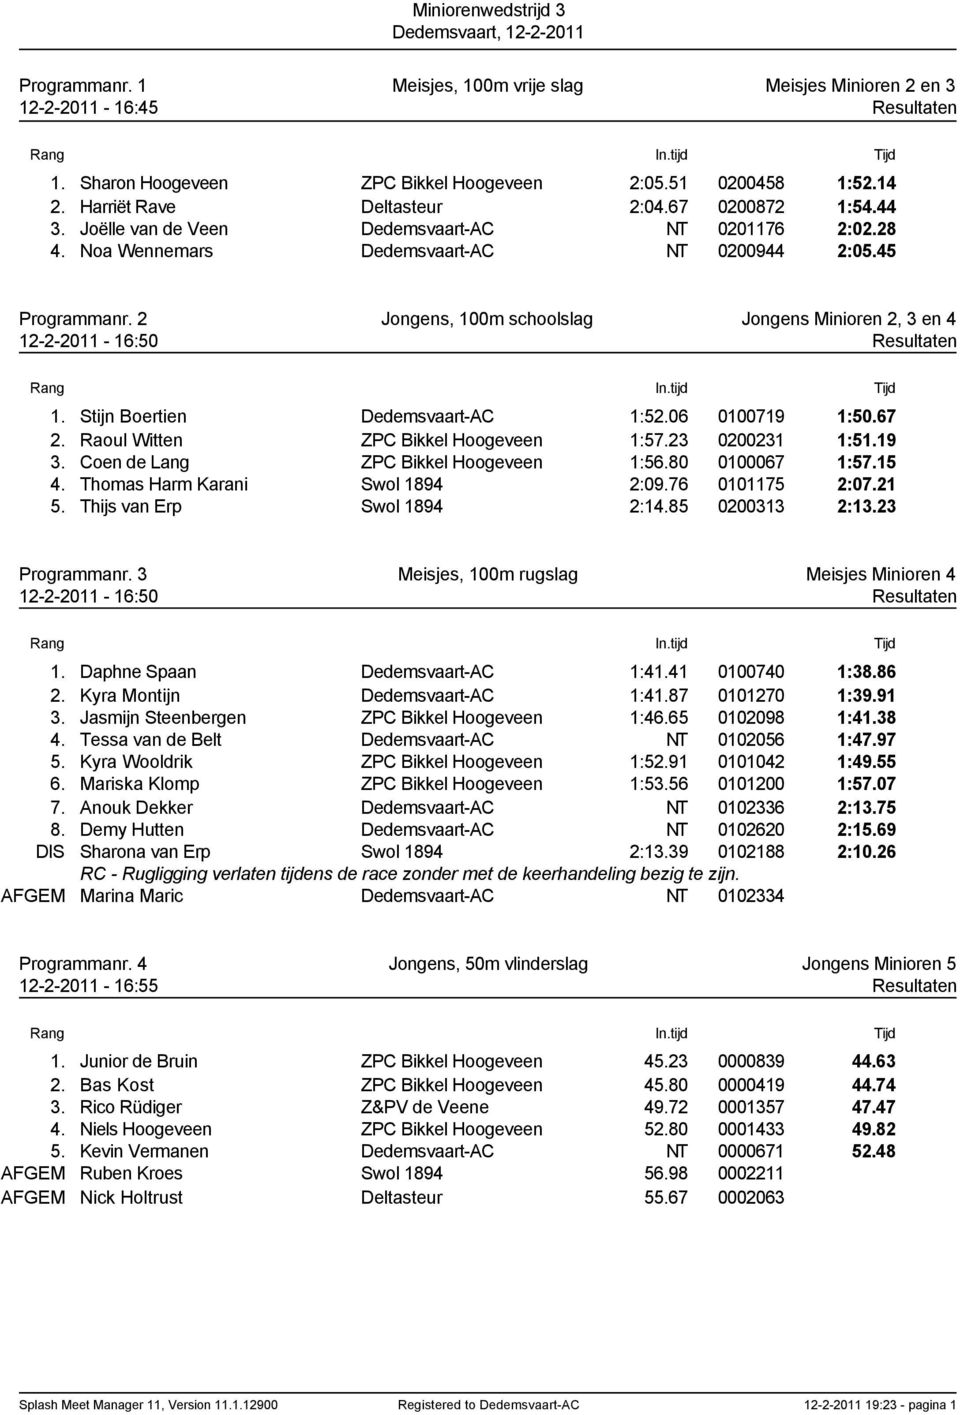 2 Jongens, 100m schoolslag Jongens Minioren 2, 3 en 4 12-2-2011-16:50 Resultaten 1. Stijn Boertien Dedemsvaart-AC 1:52.06 0100719 1:50.67 2. Raoul Witten ZPC Bikkel Hoogeveen 1:57.23 0200231 1:51.